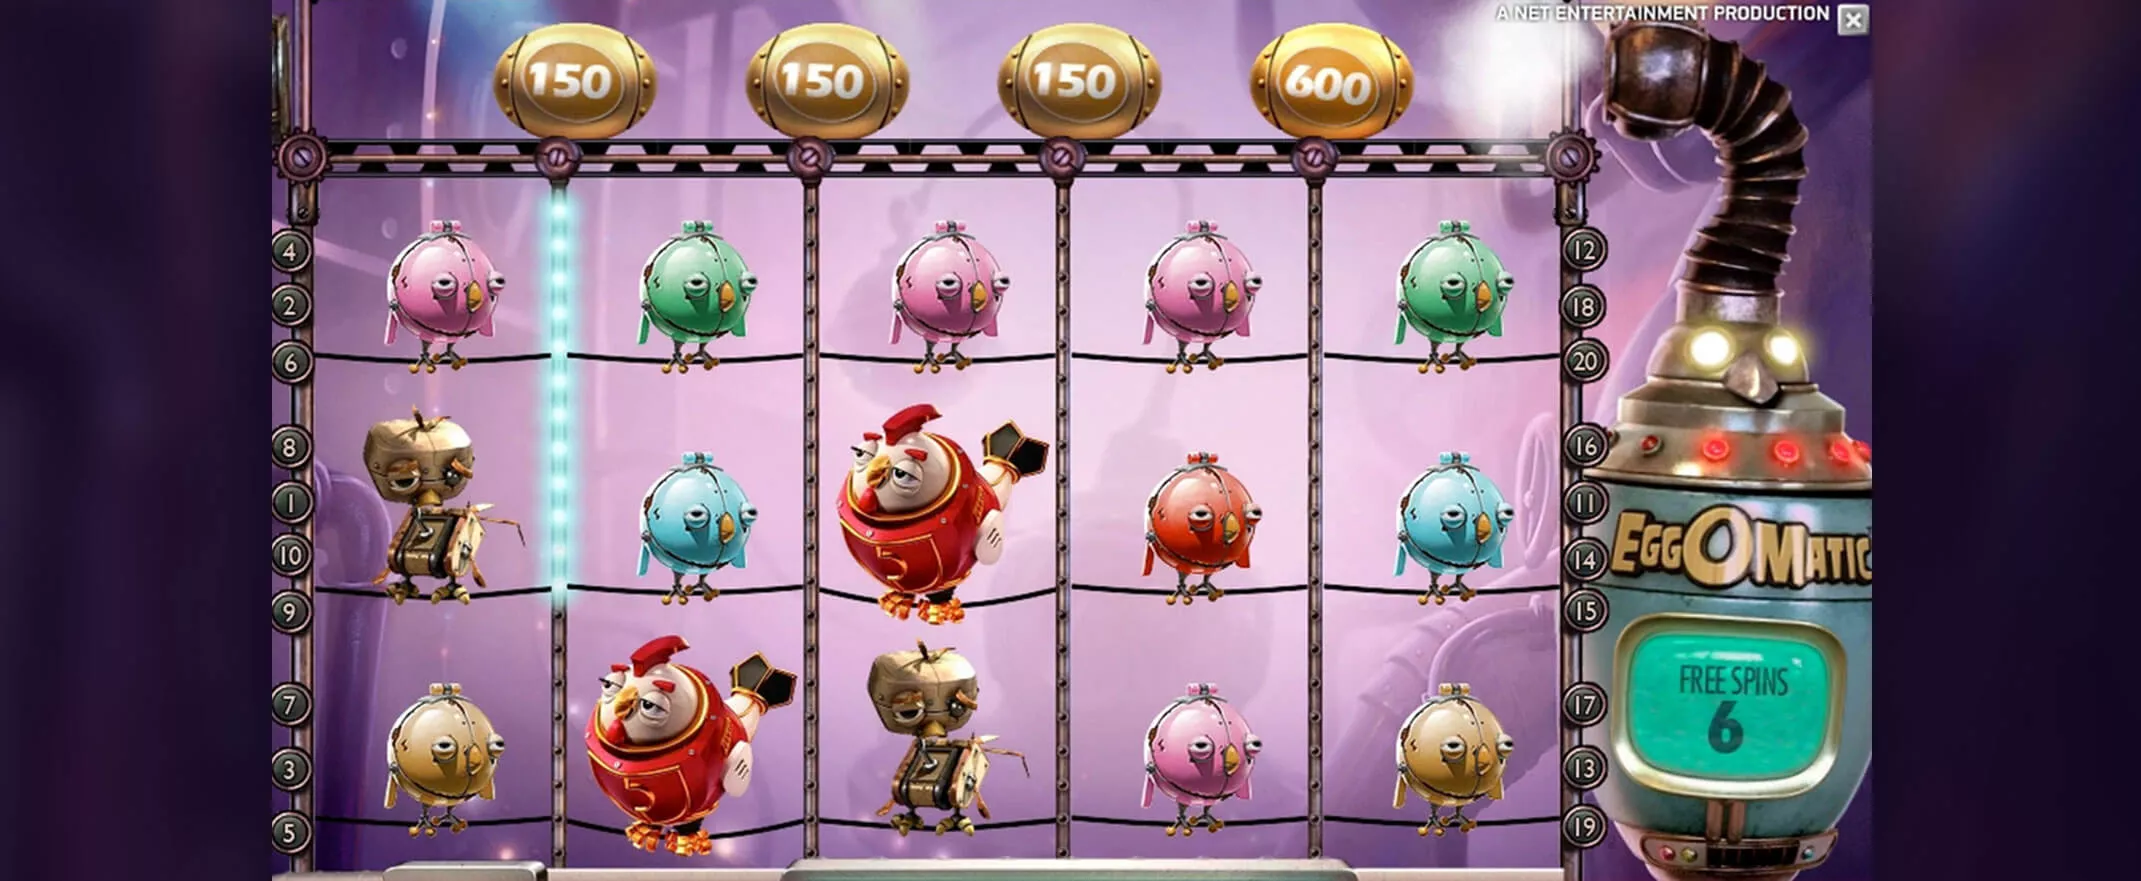 Egg-O-Matic Spielautomat von NetEnt